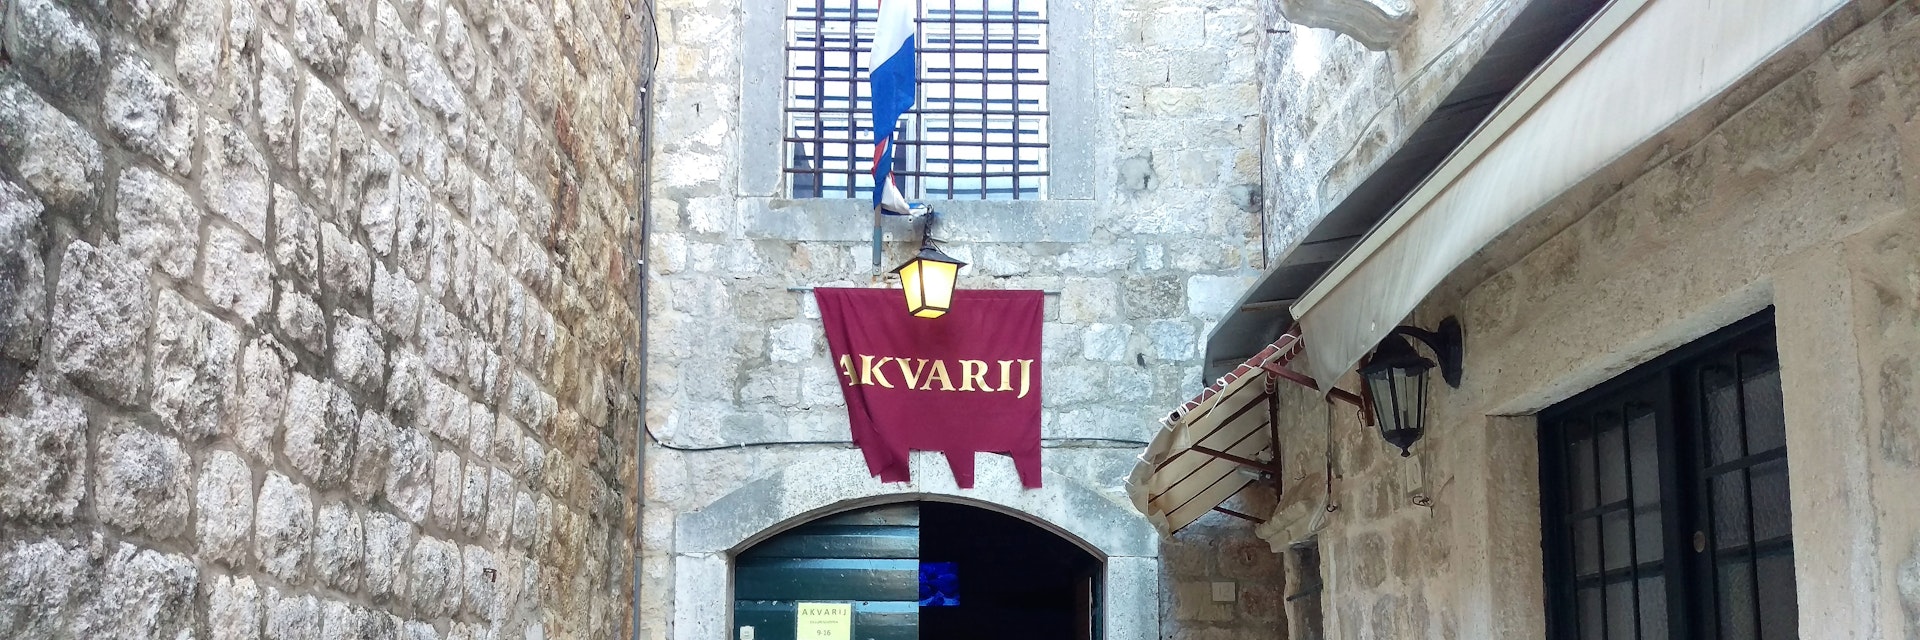 Dubrovnik Aquarium entrance